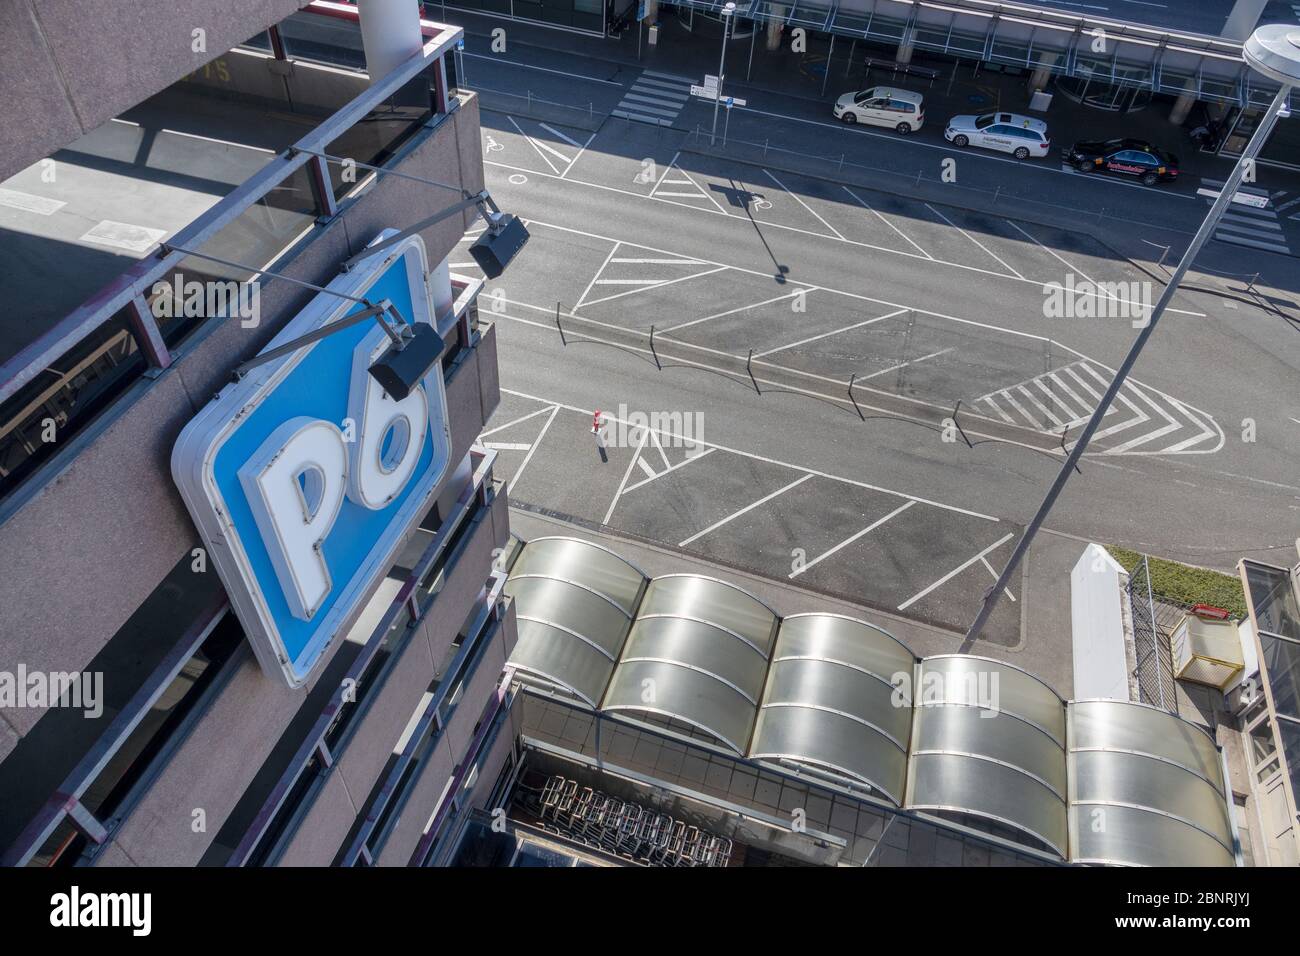 Kein Öffentlicher Parkplatz Stockfotos und -bilder Kaufen - Alamy